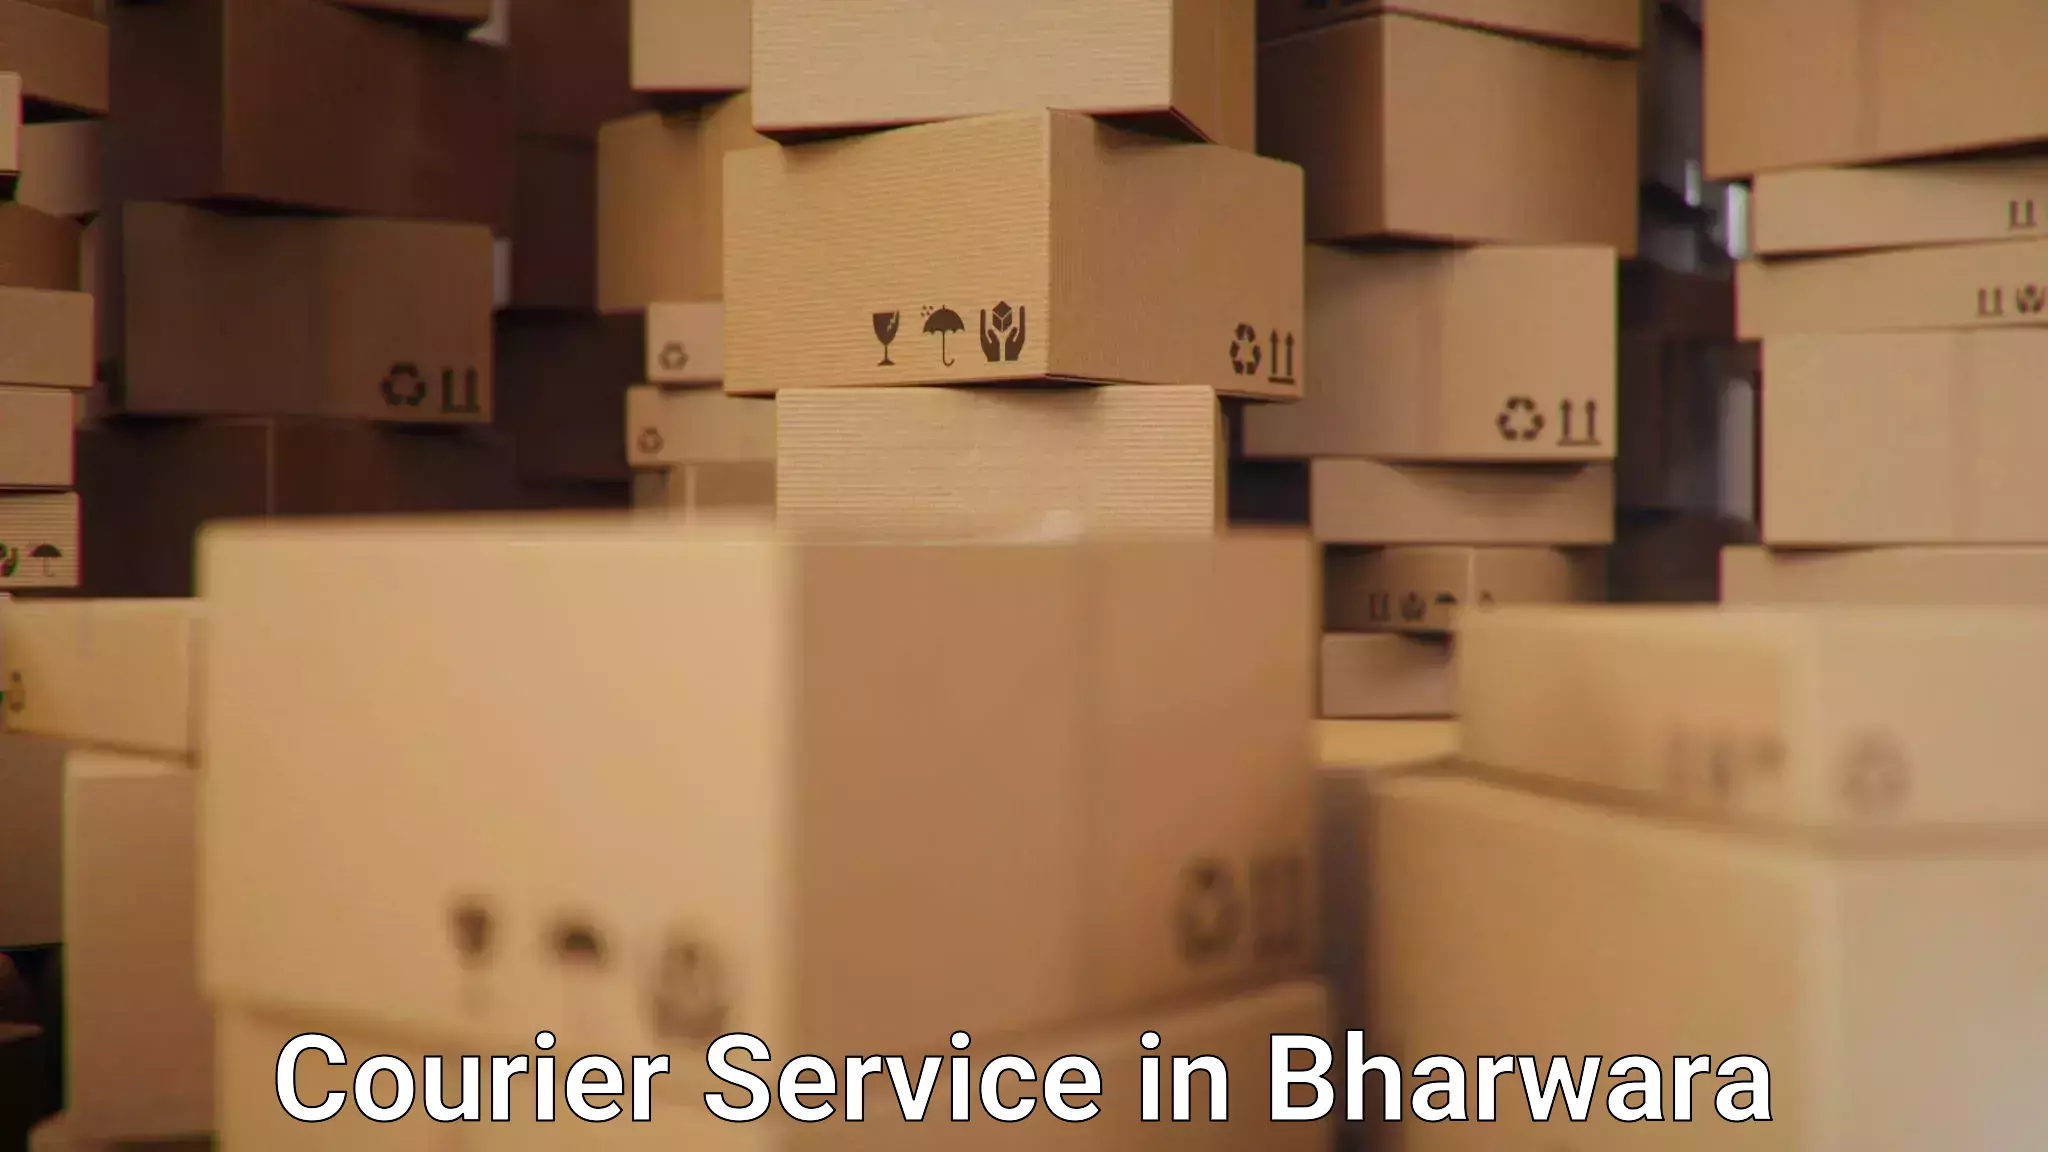 Customer-focused courier in Bharwara